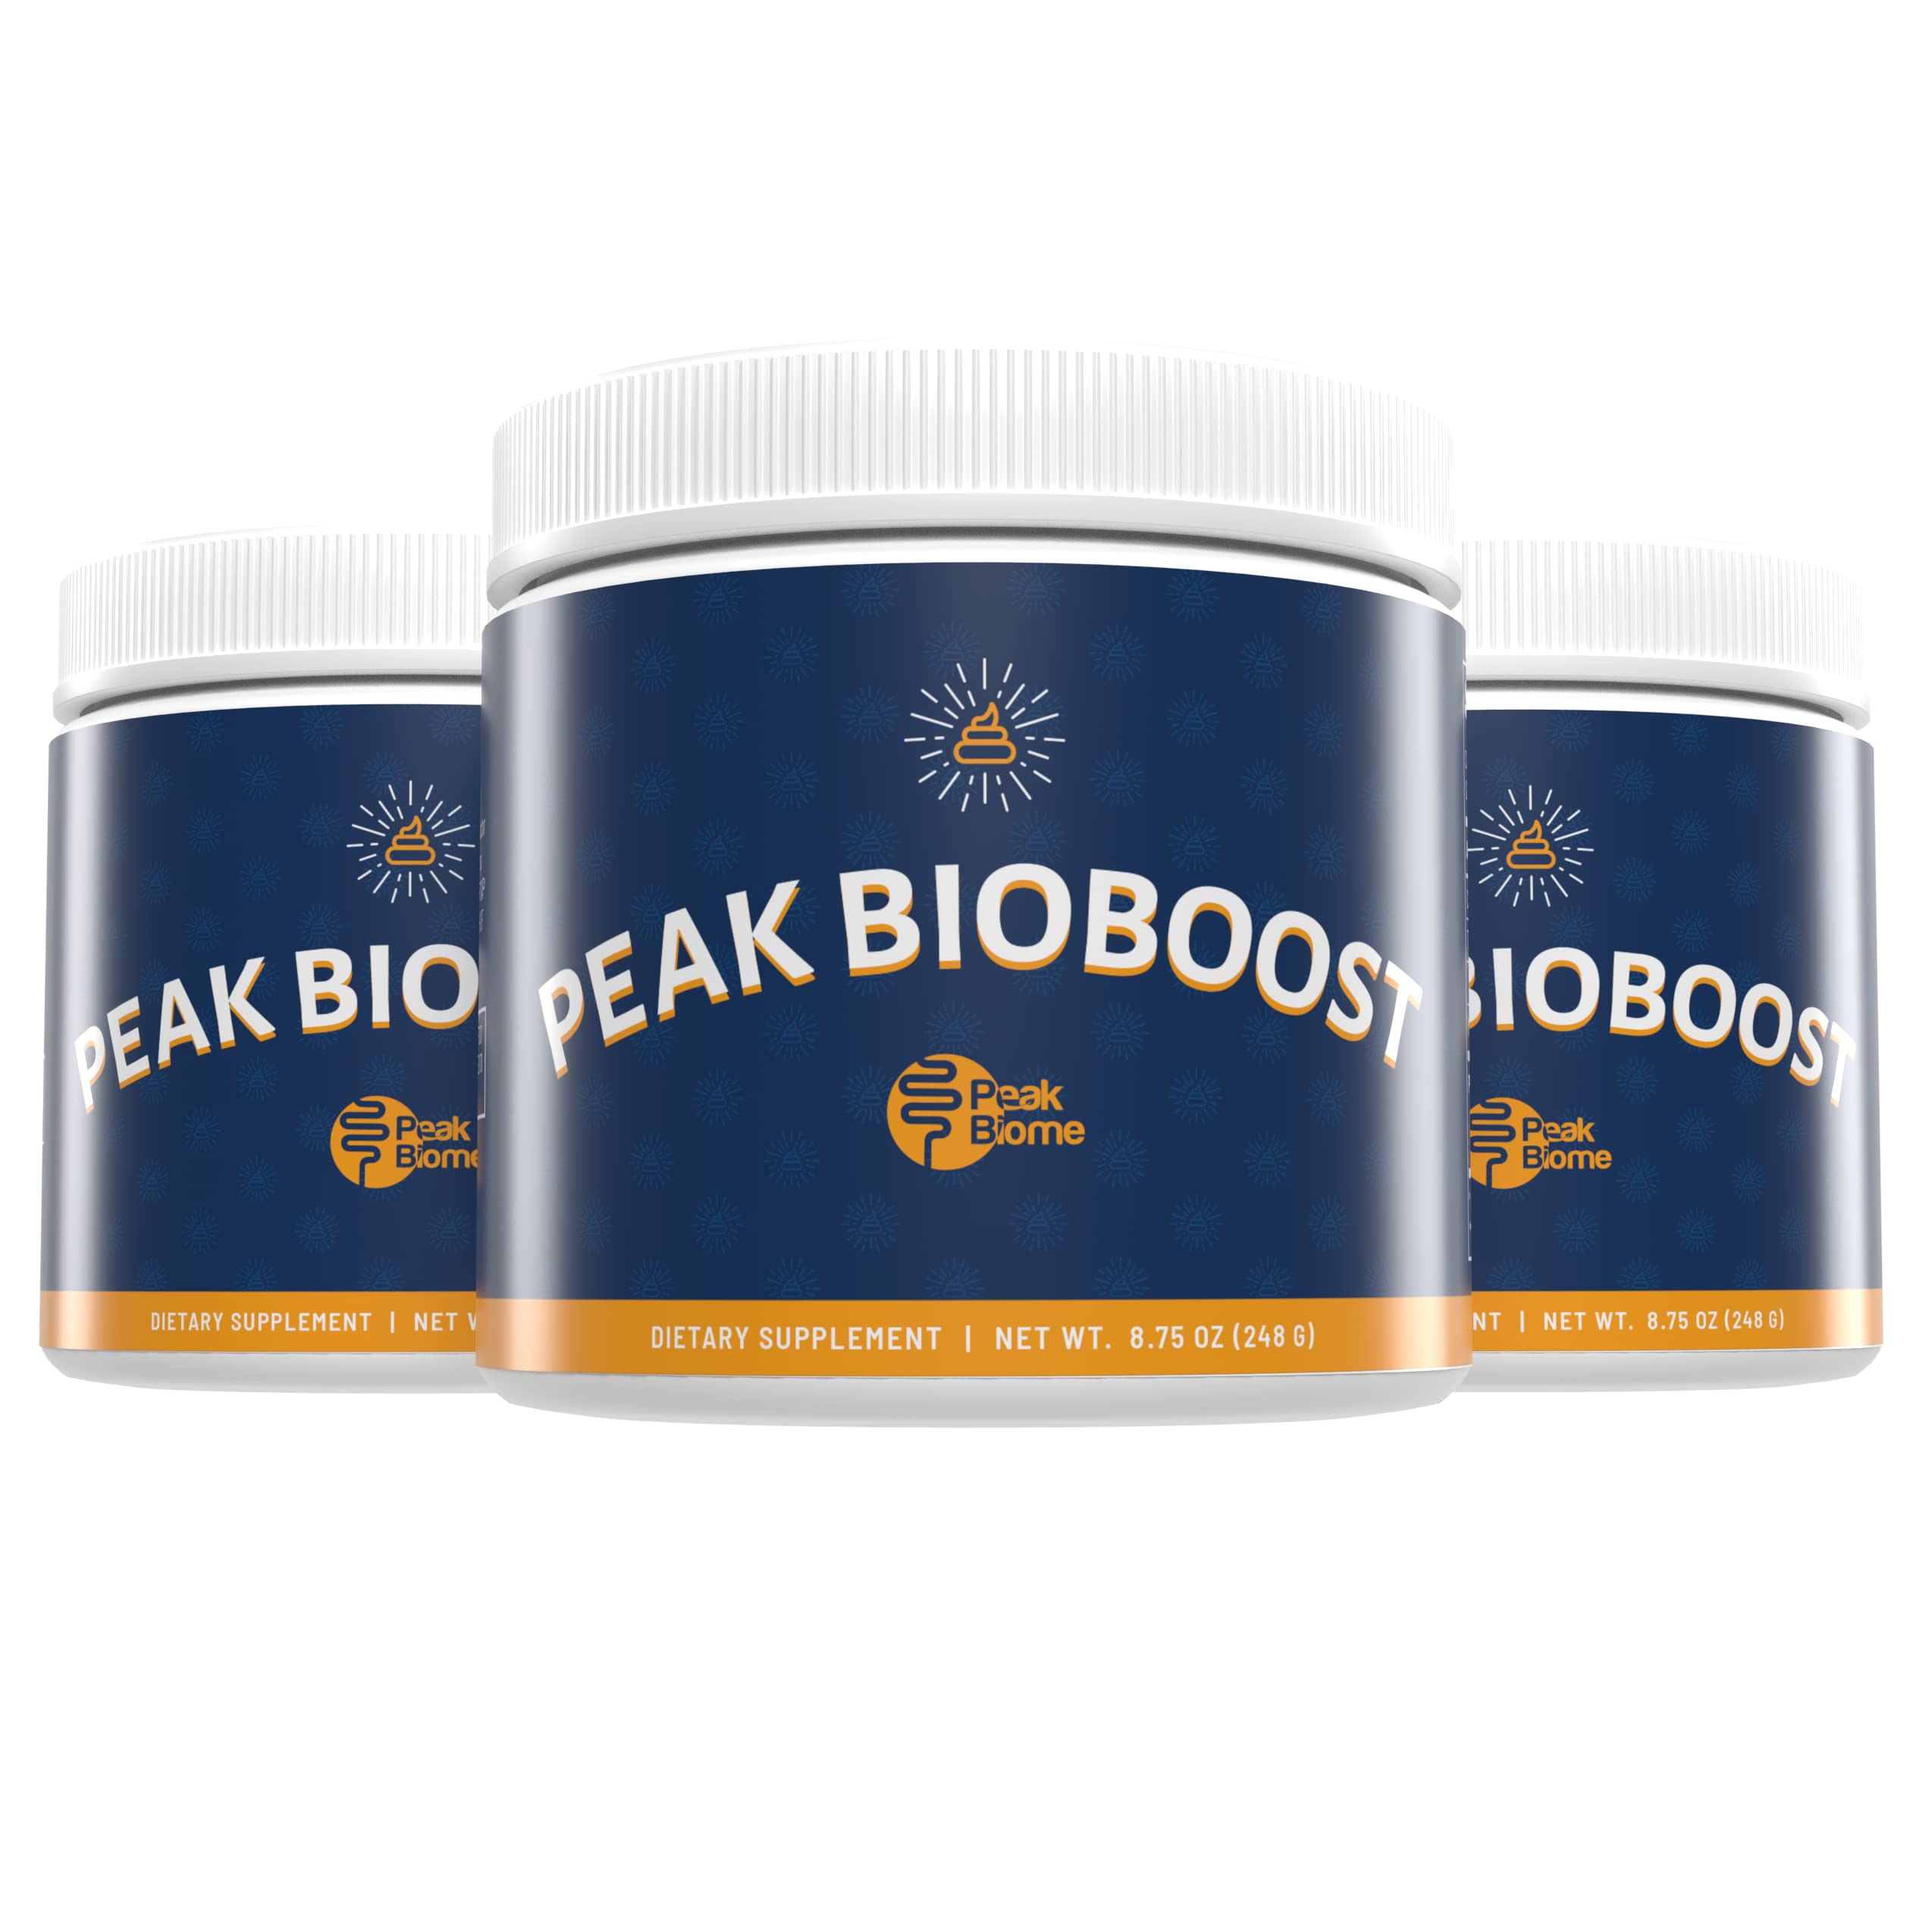 is peak bioboost legitimate